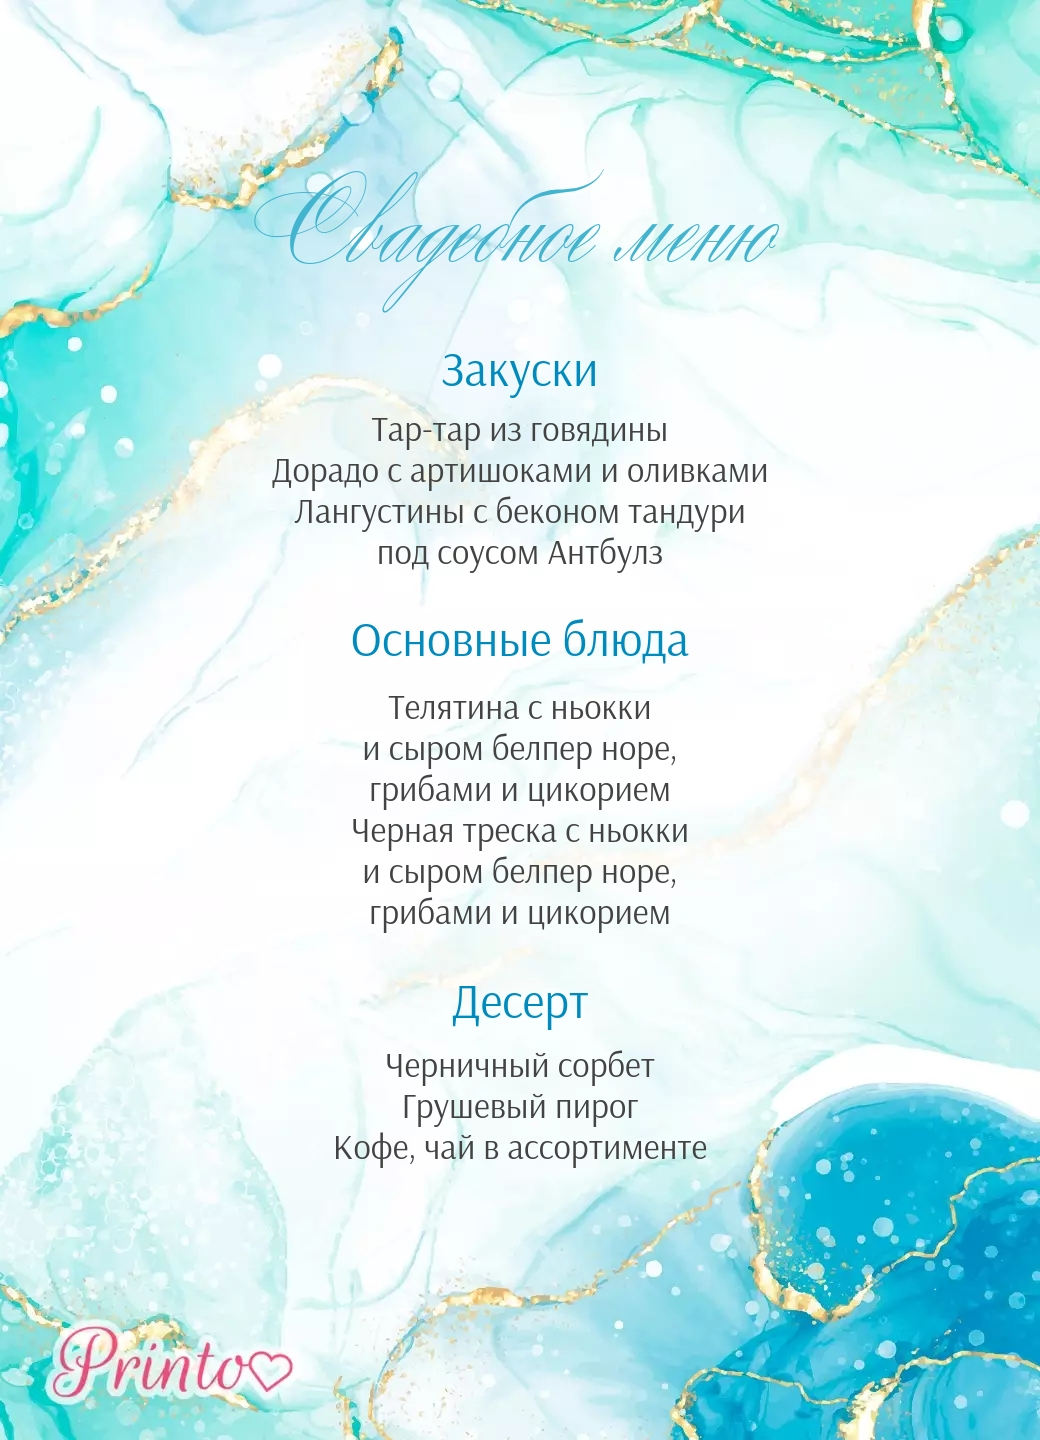 Шаблон свадебного меню "Волны счастья"